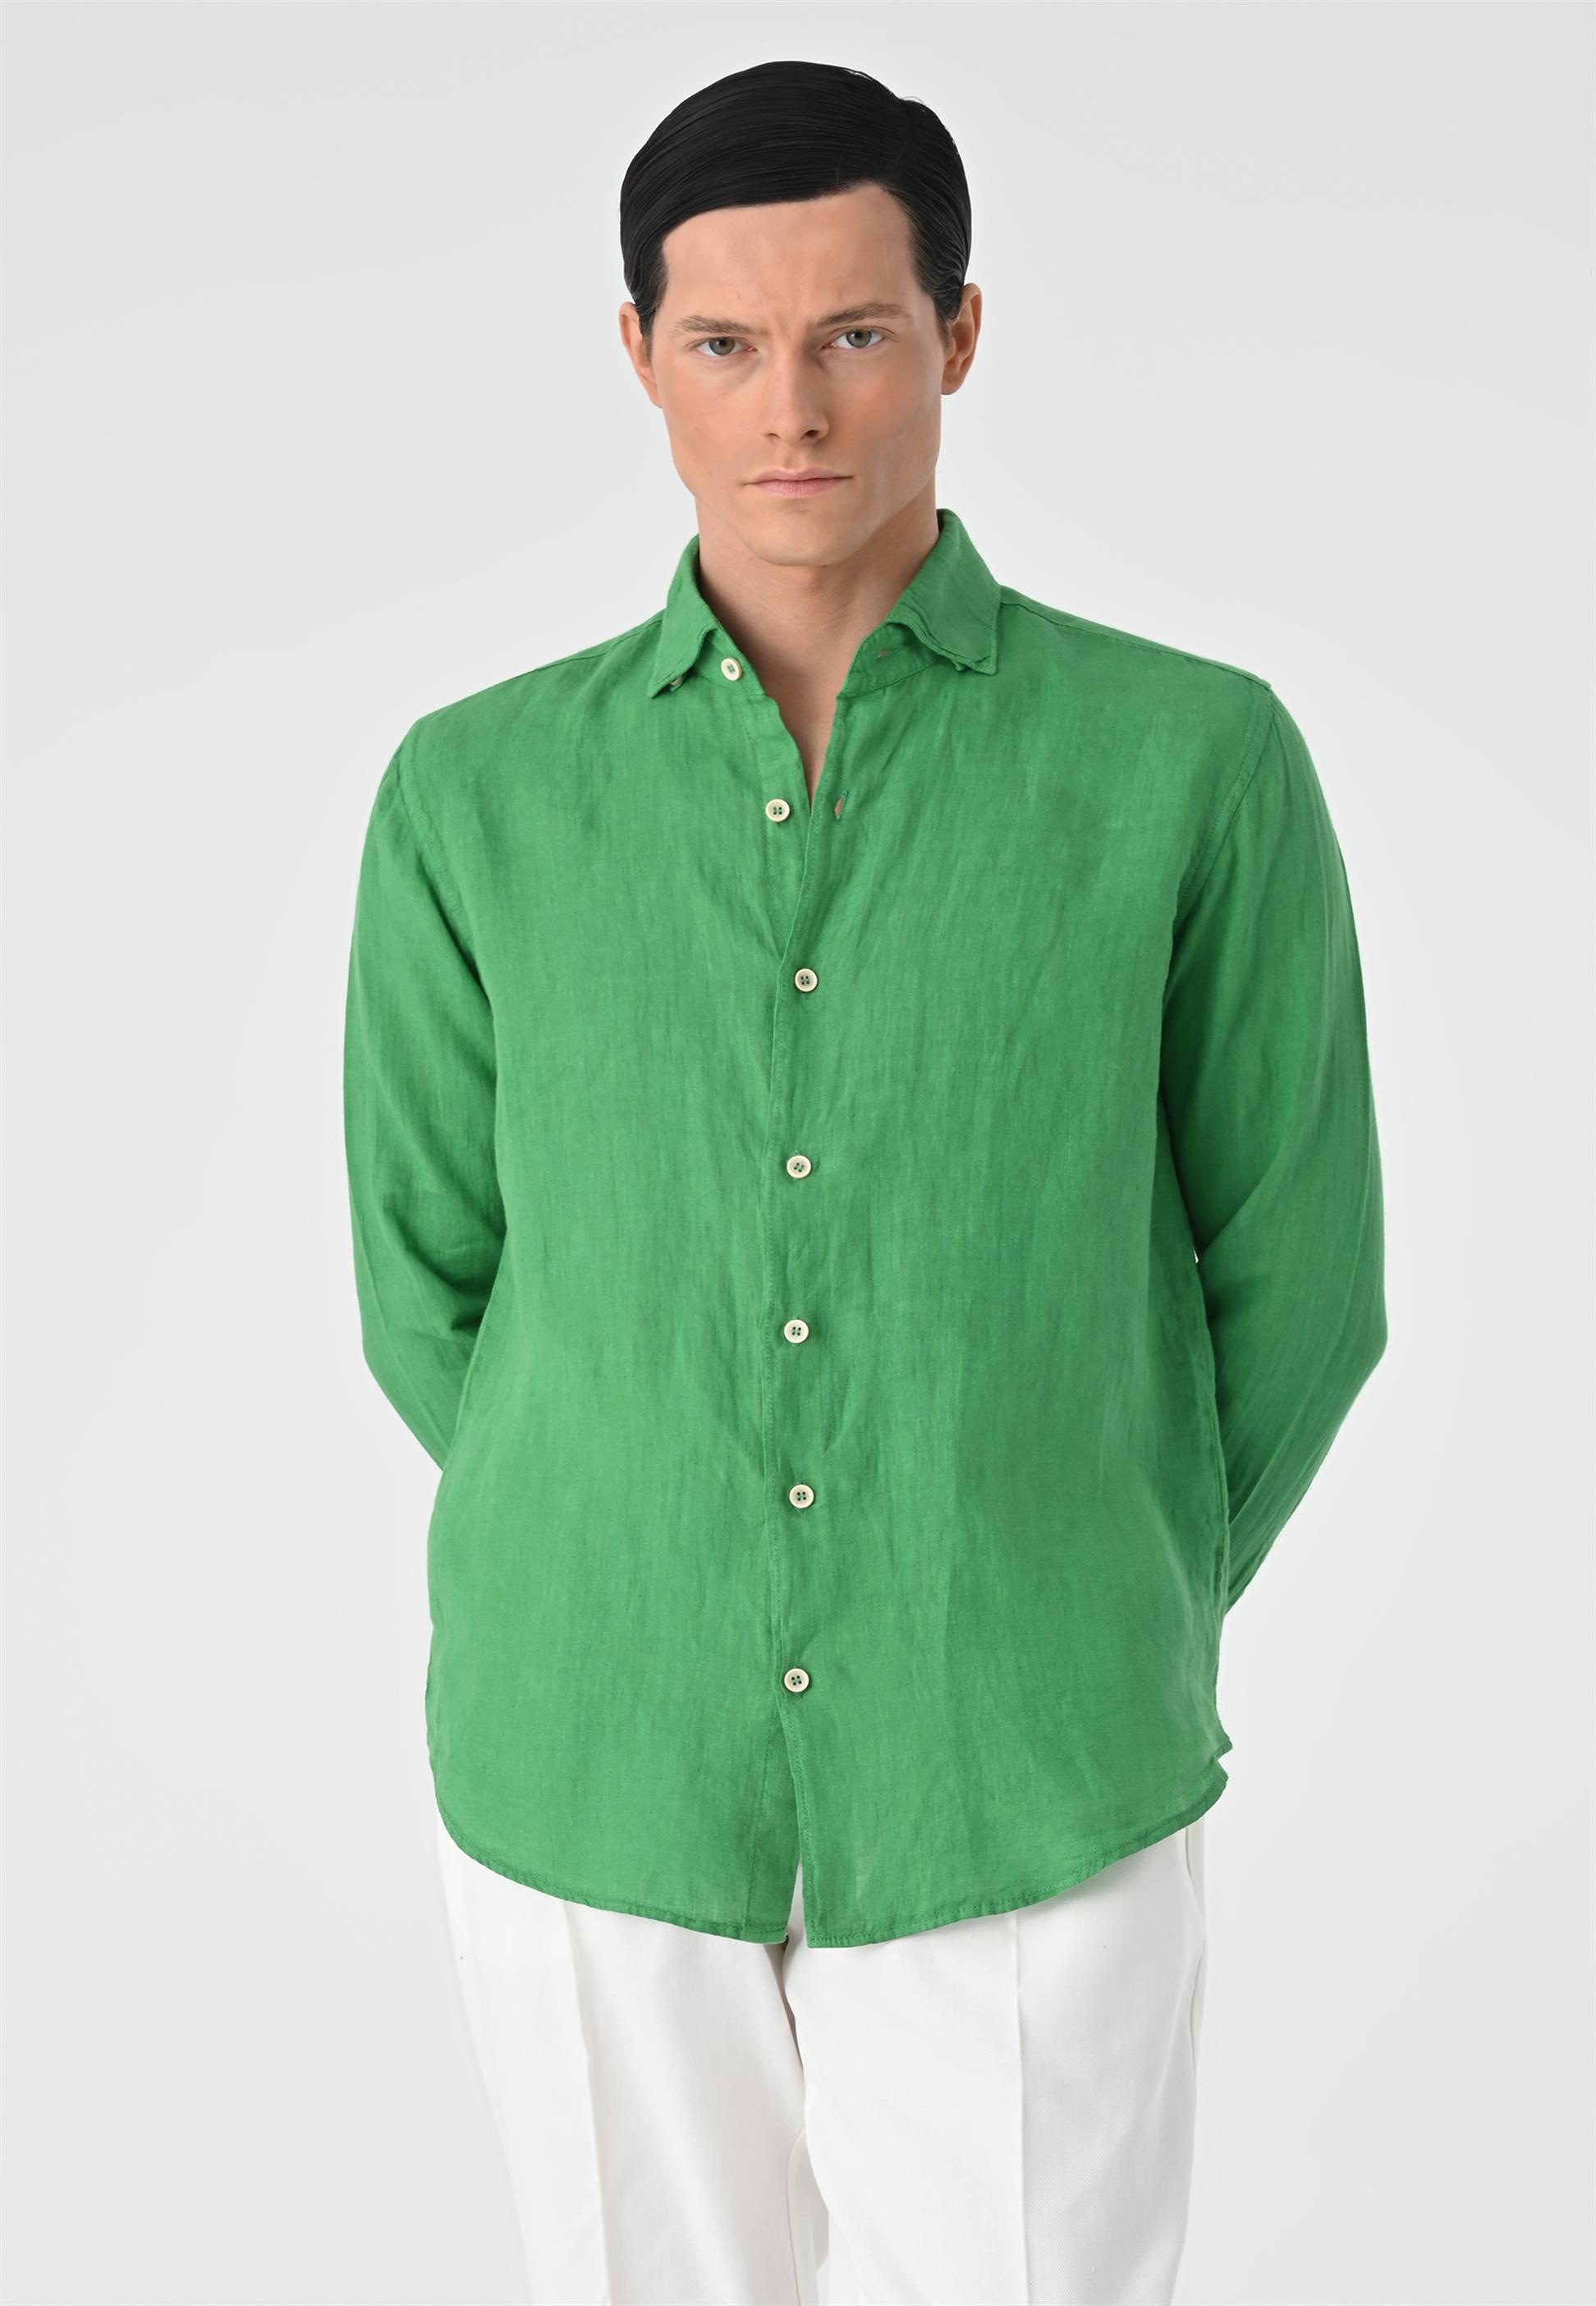 Collar Button Detailed 100% Linen Men's Shirt